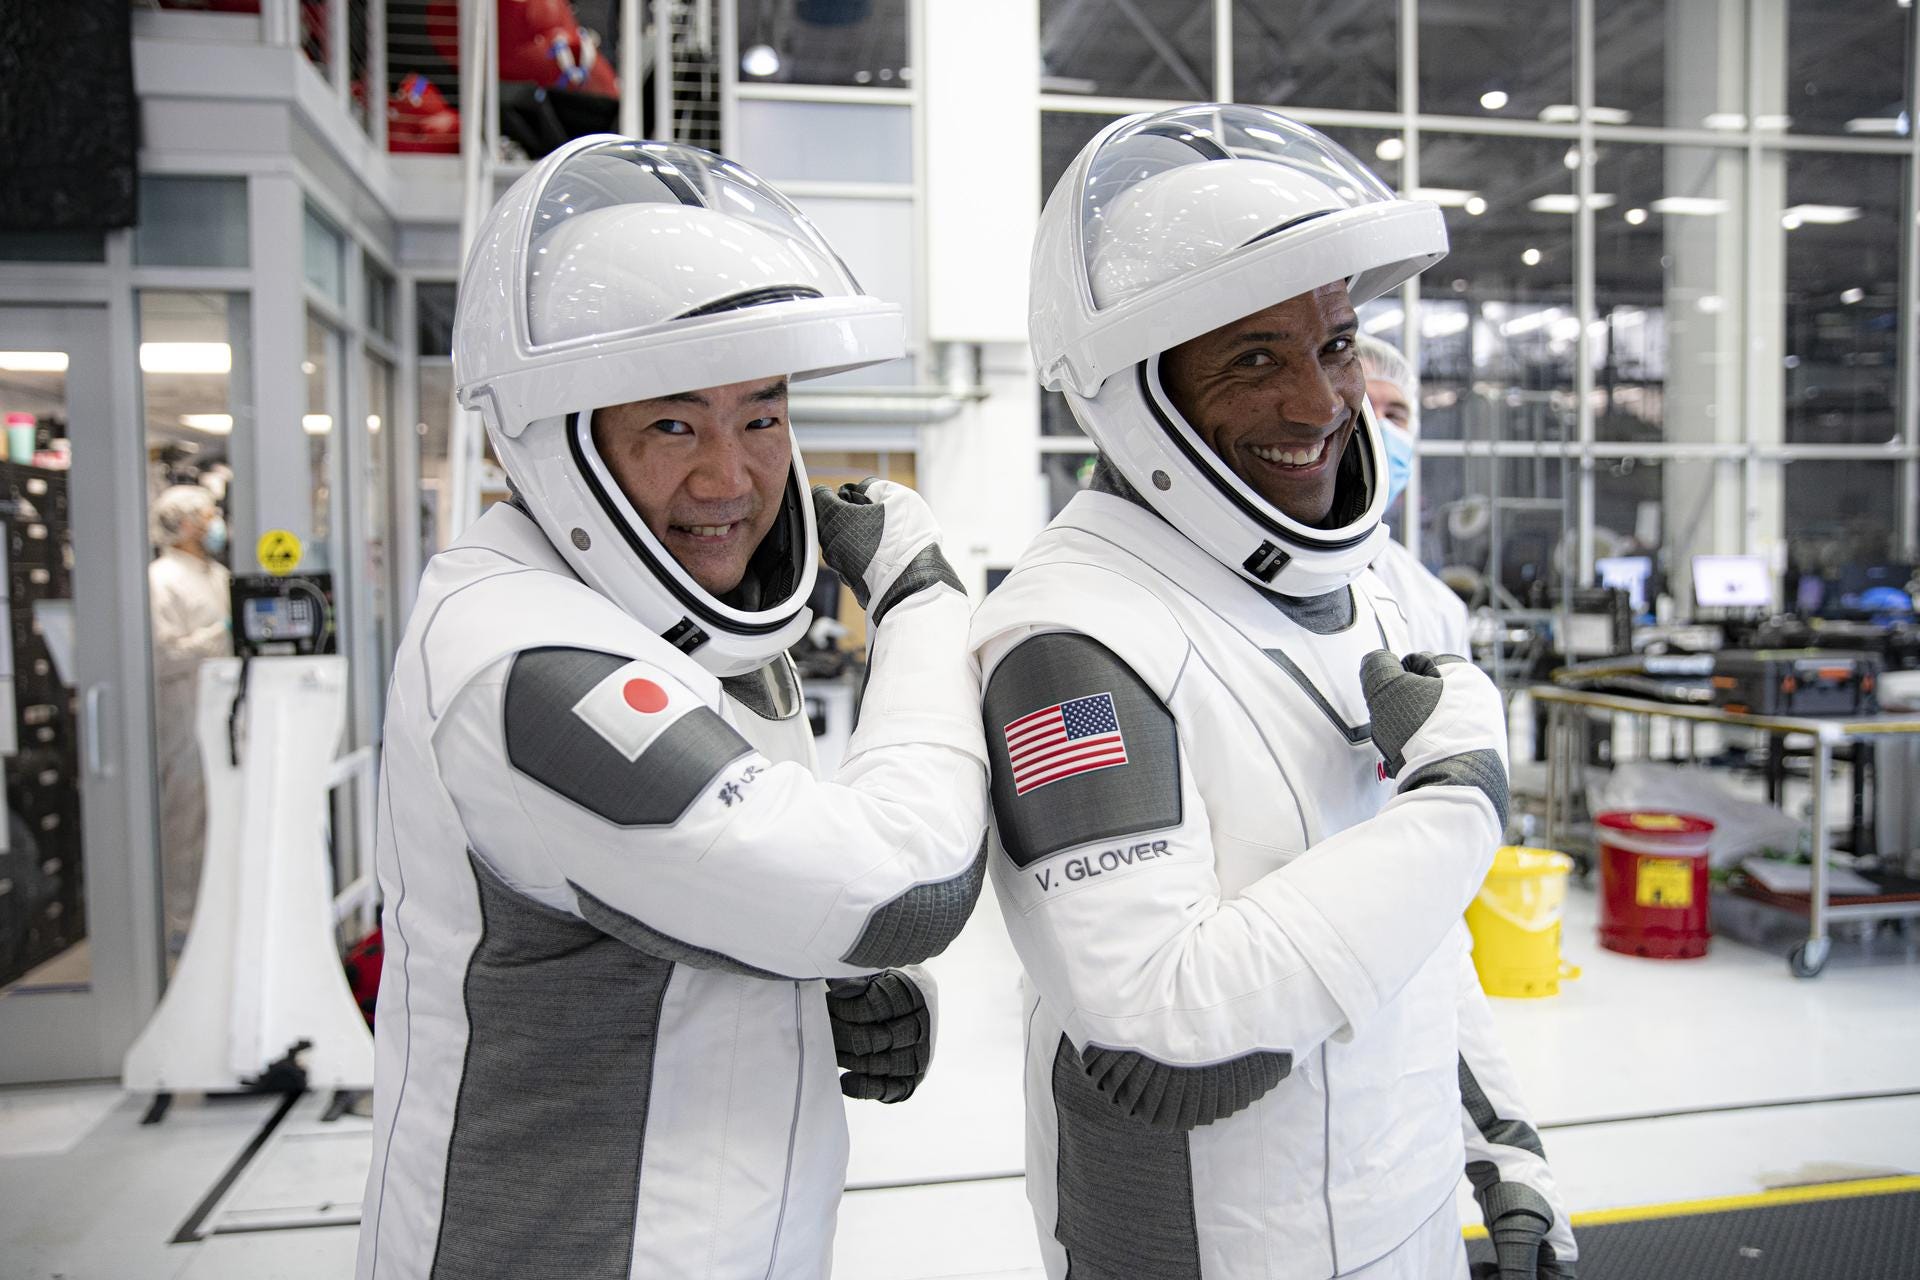 crew 1 crew dragon spacex astronauts soichi noguchi victor glover